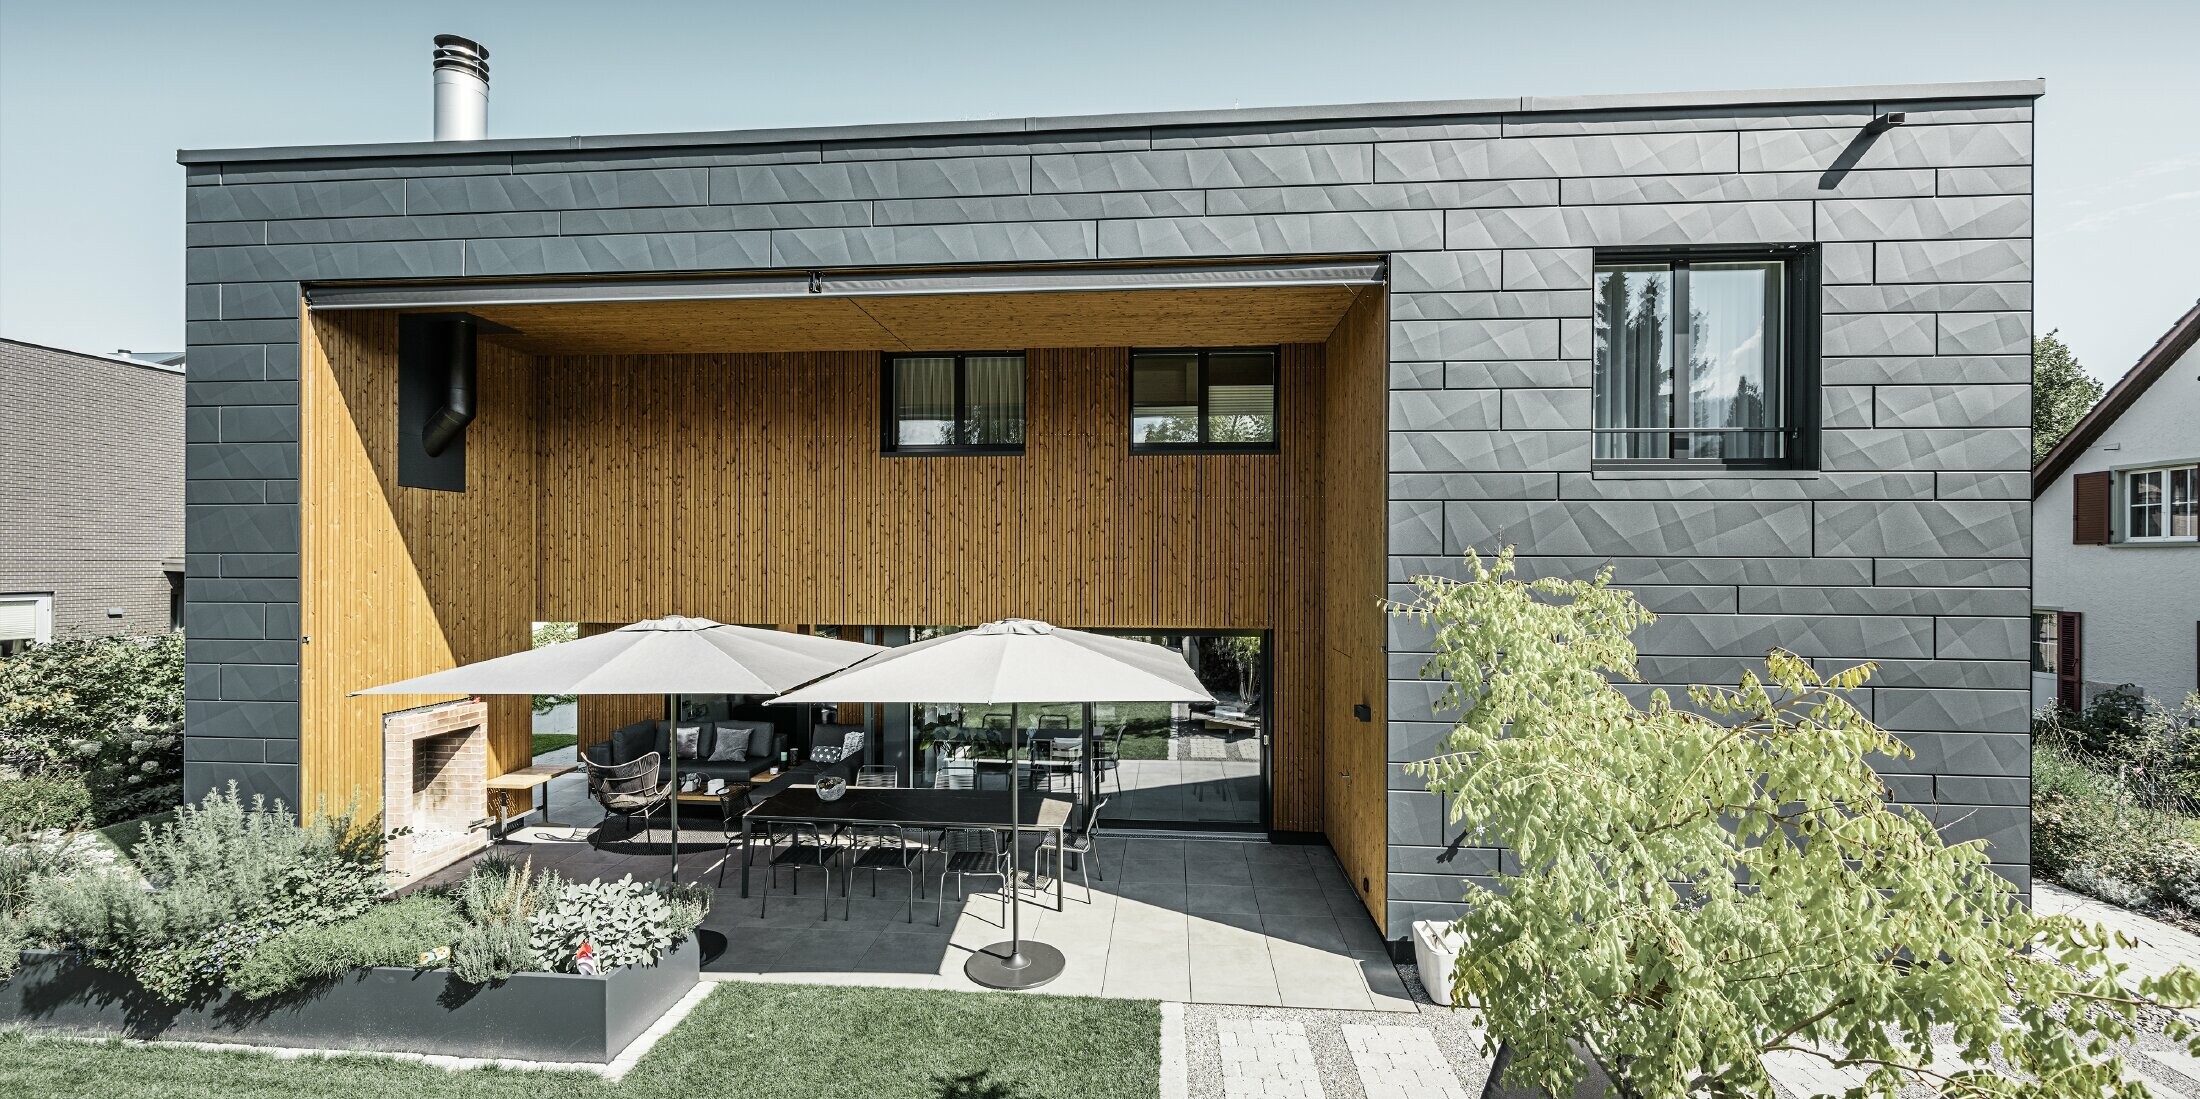 Maison individuelle moderne avec toit plat et façade en Siding.X. La terrasse est joliment agrémentée d’un espace pour s’asseoir.